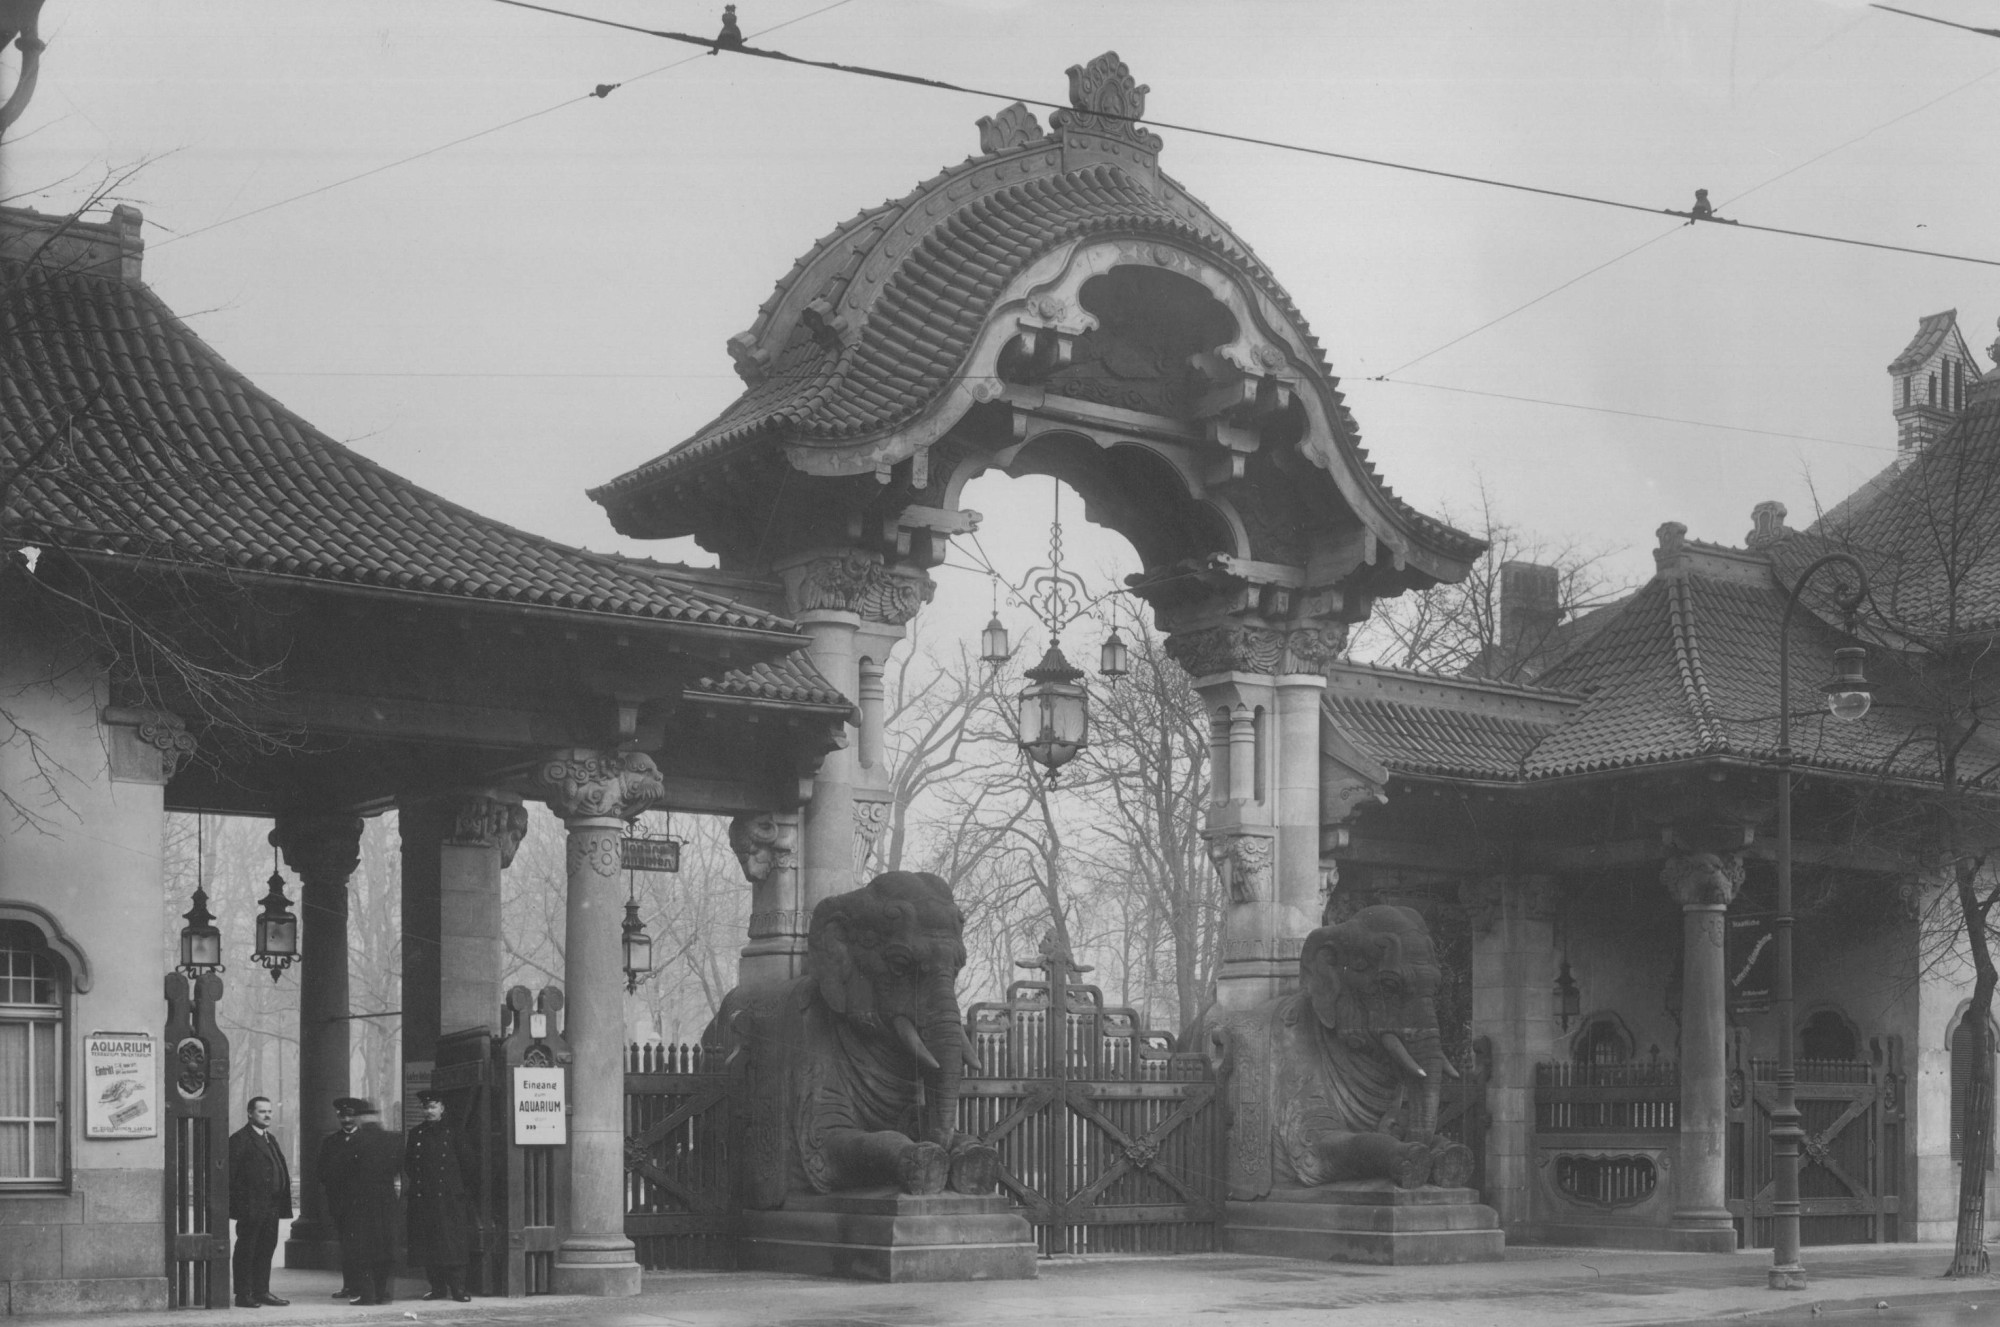 Schwarz-weiß Foto: Eingangstor des Berliner Zoos gestützt durch zwei Elefantenskulpturen. Drei Männer stehen vor dem Eingang. Zwei von ihnen tragen Zoouniformen.